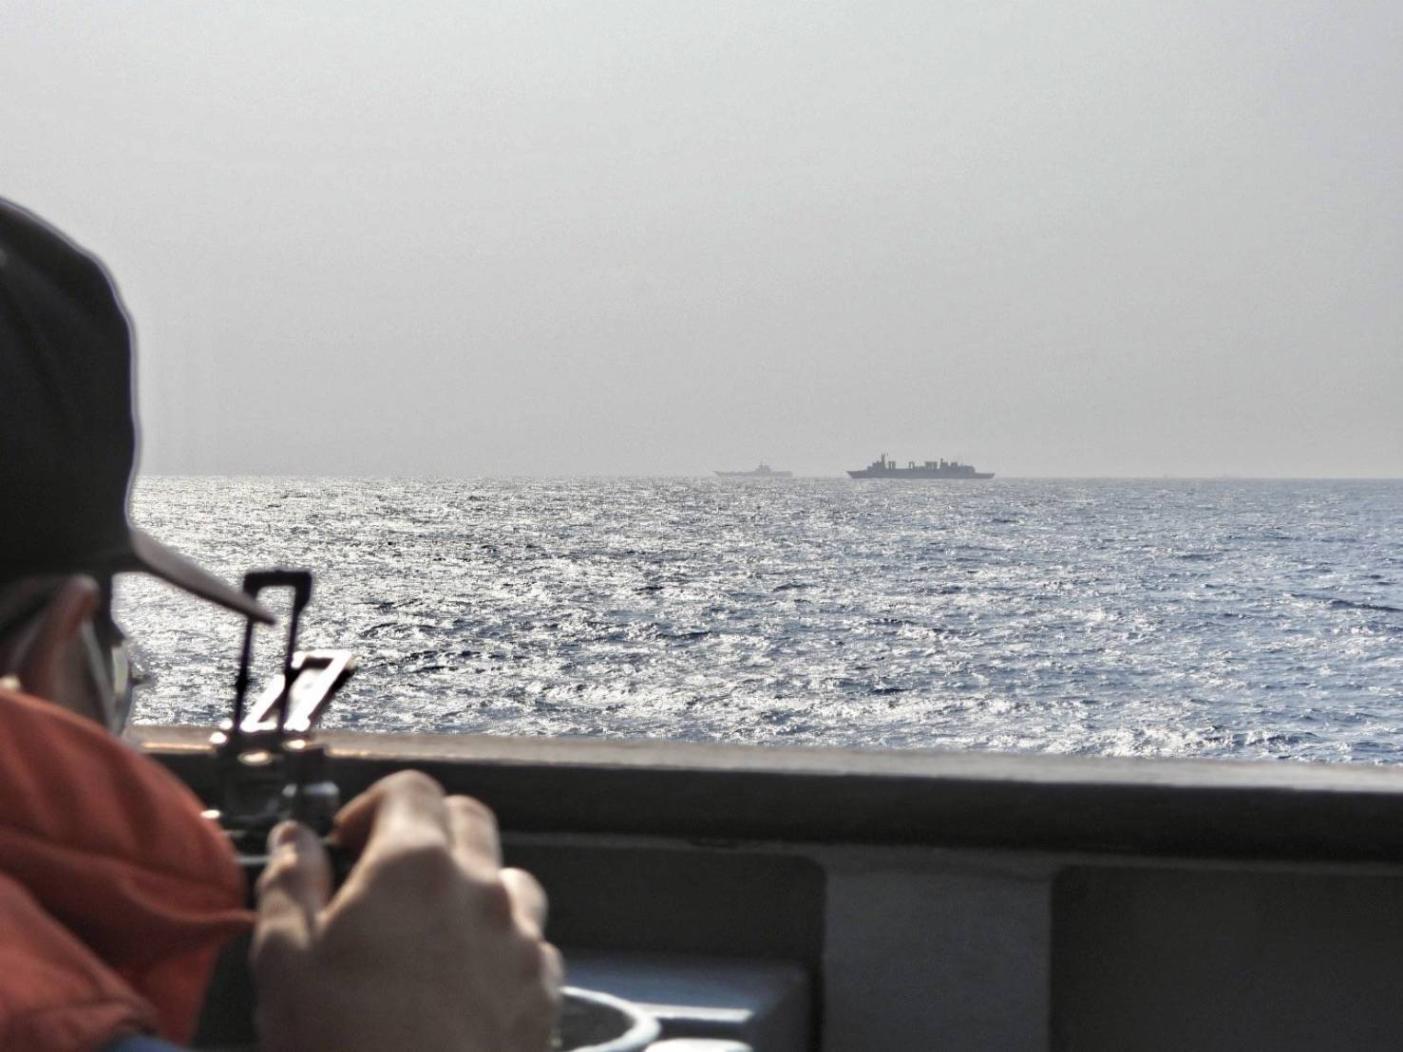 國防部在山東艦今年4月通過巴士海峽時，立即展開監控，隨後釋出監控照（圖）供媒體引用。國防部提供